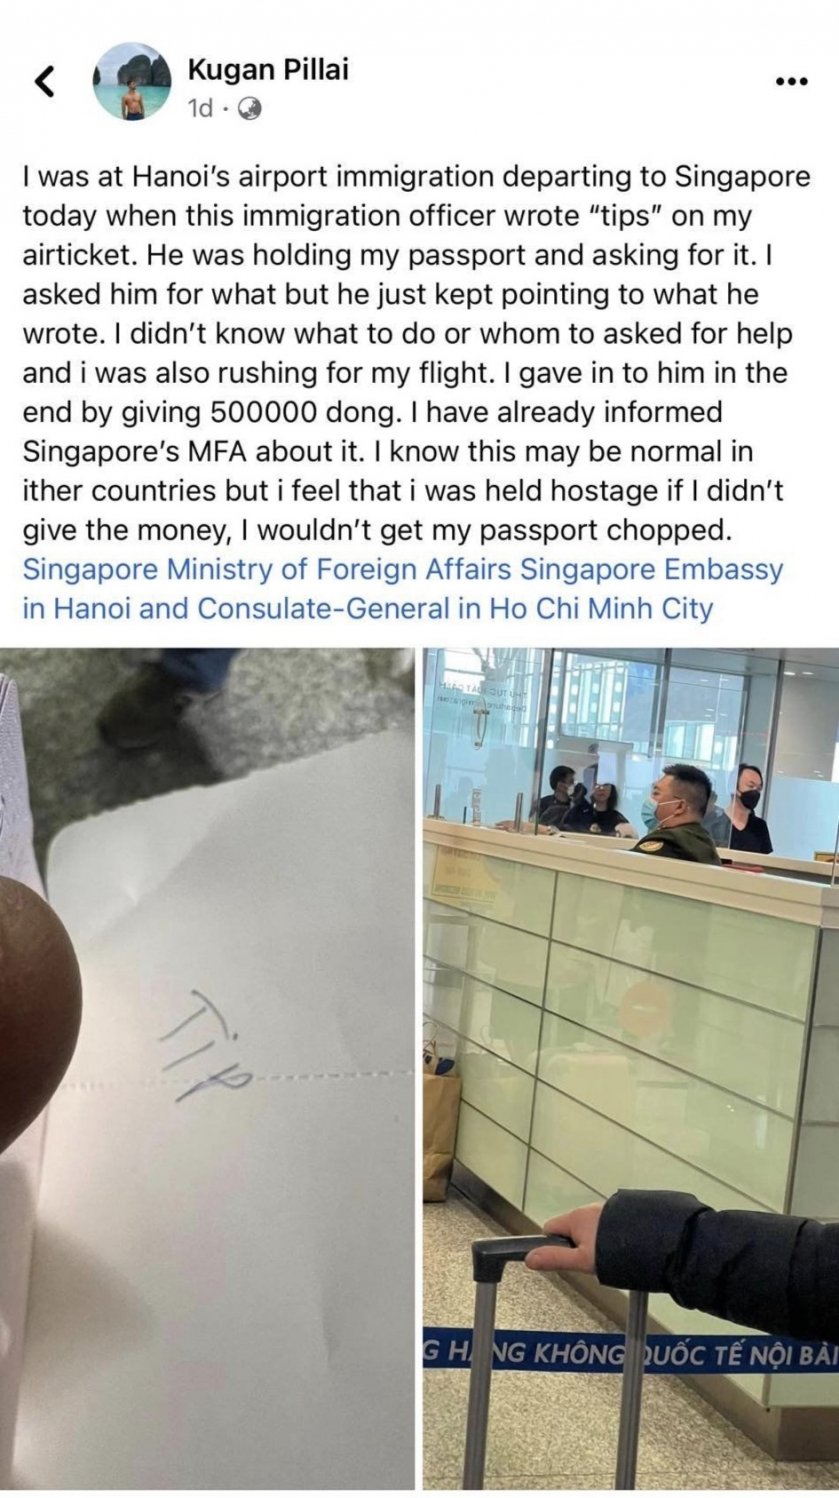 Chưa đầy 2 ngày sau khi đăng tải, bài viết đã nhận về gần 8.000 lượt chia sẻ, hơn 10.000 lượt like kèm theo hàng trăm bình luận chia sẻ trải nghiệm tương tự ở 1 số sân bay khác tại Việt Nam.